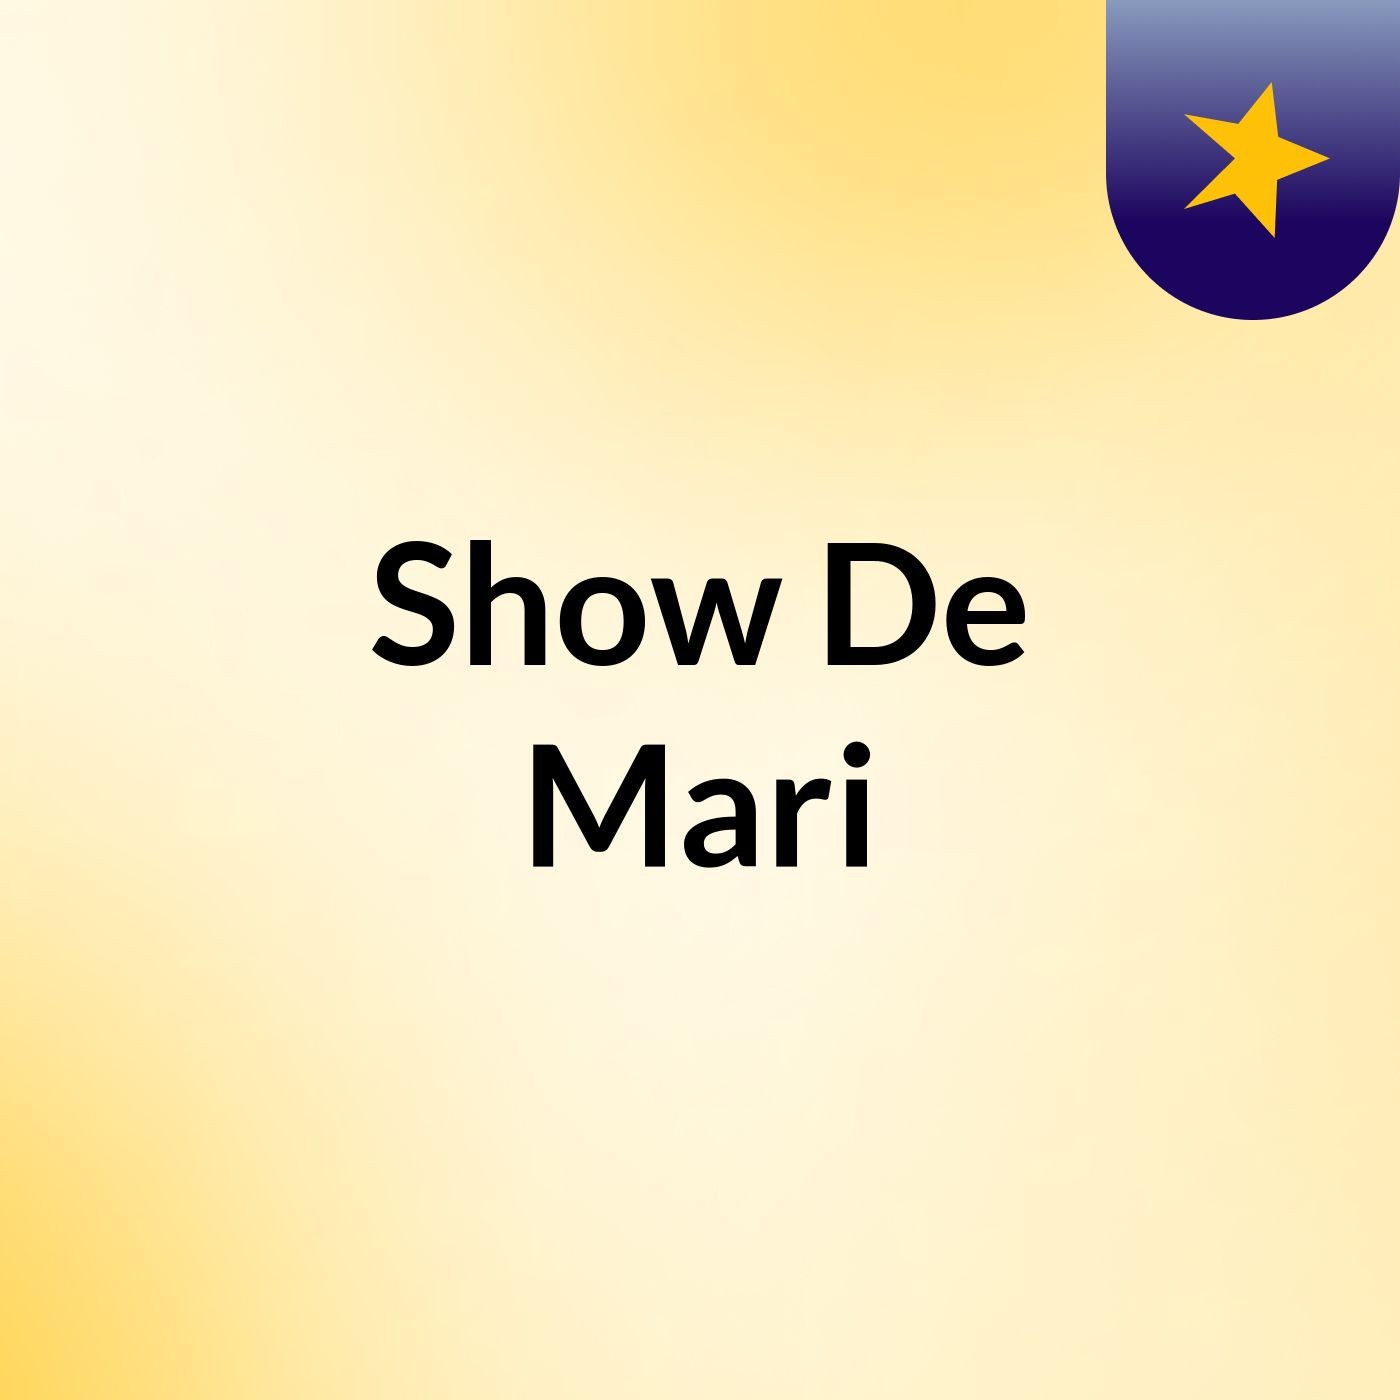 Show De Mari